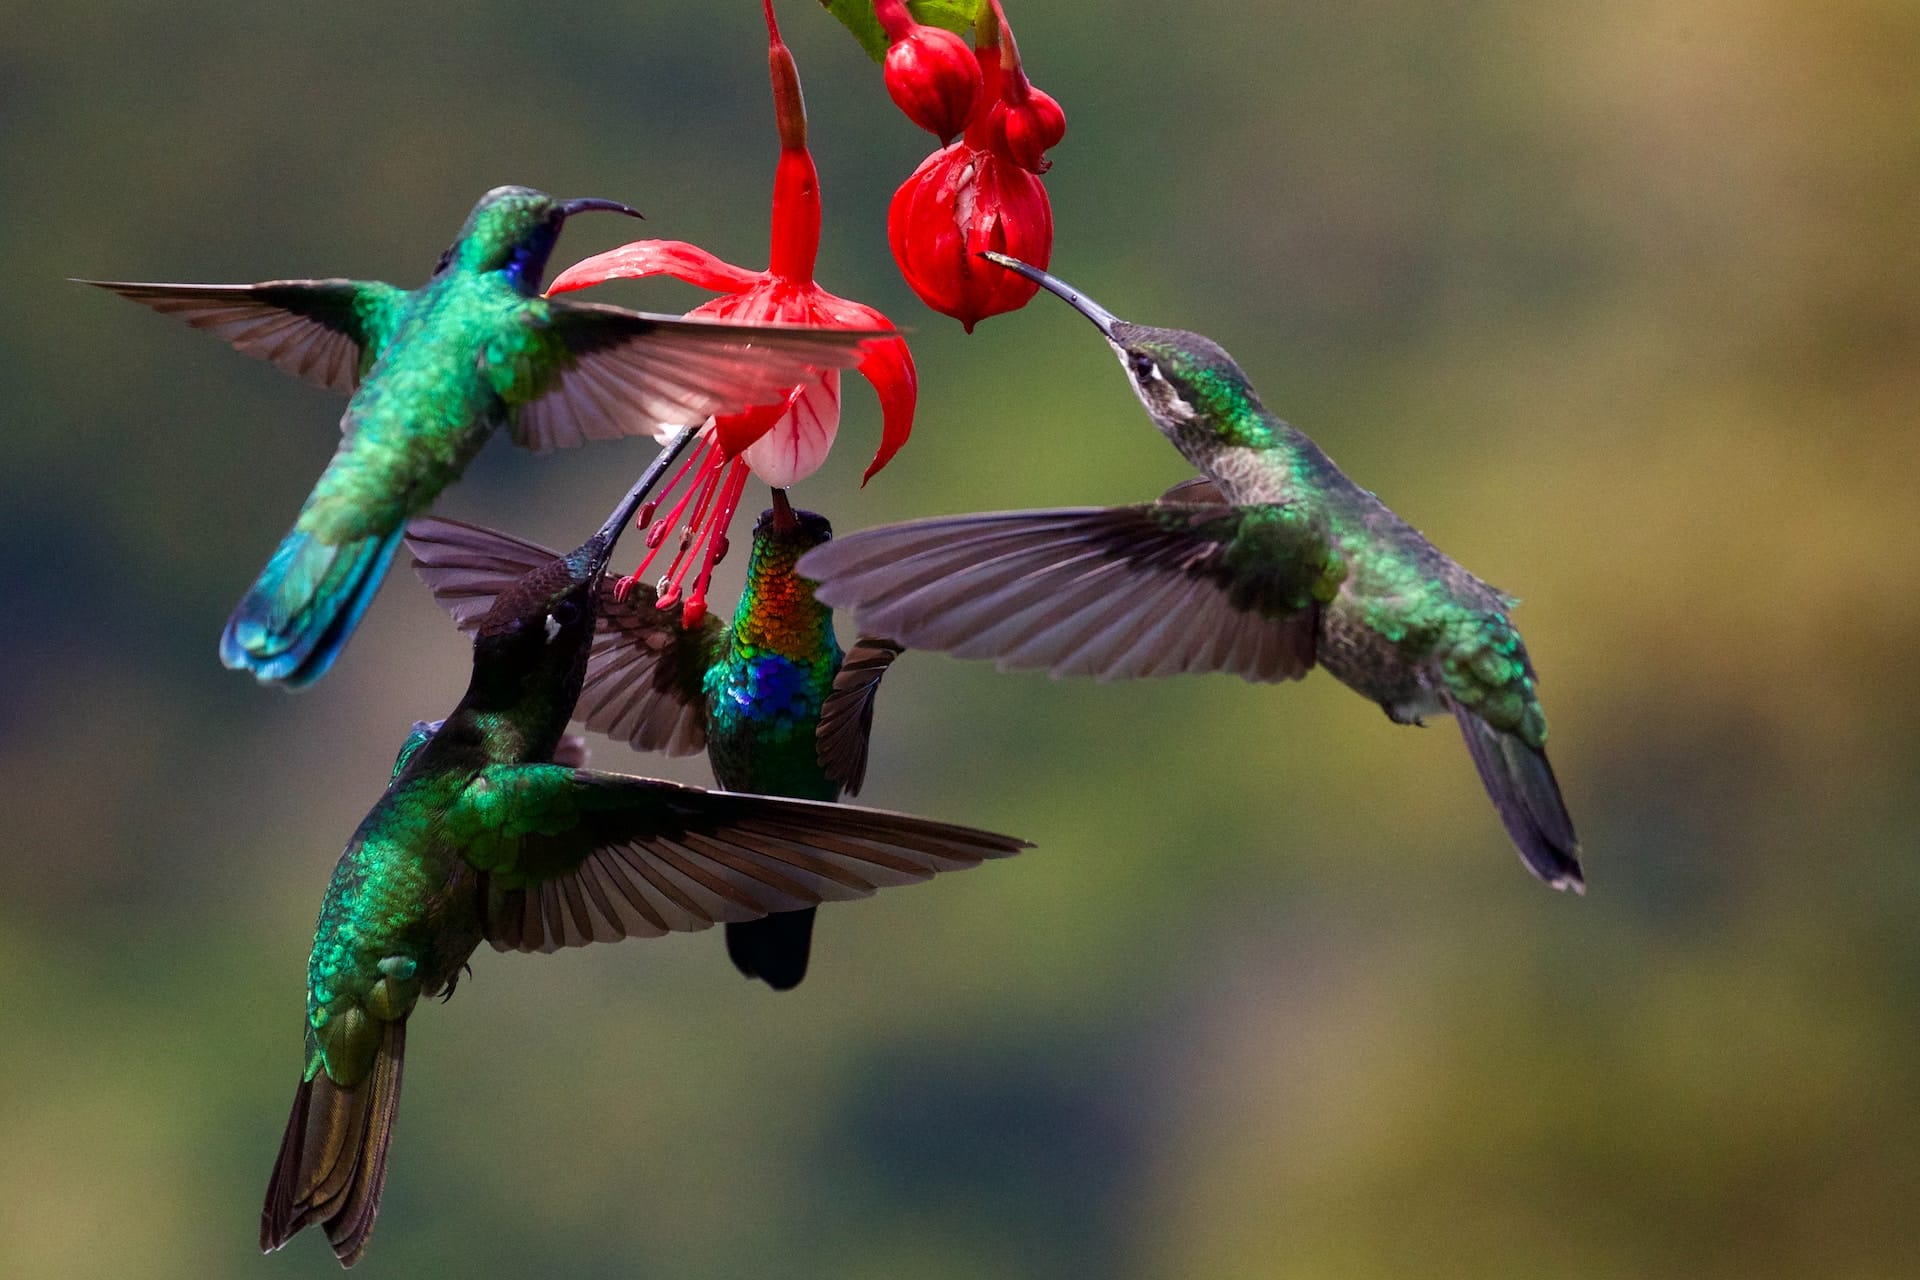 Il segreto della straordinaria agilità dei colibrì è stato finalmente decifrato